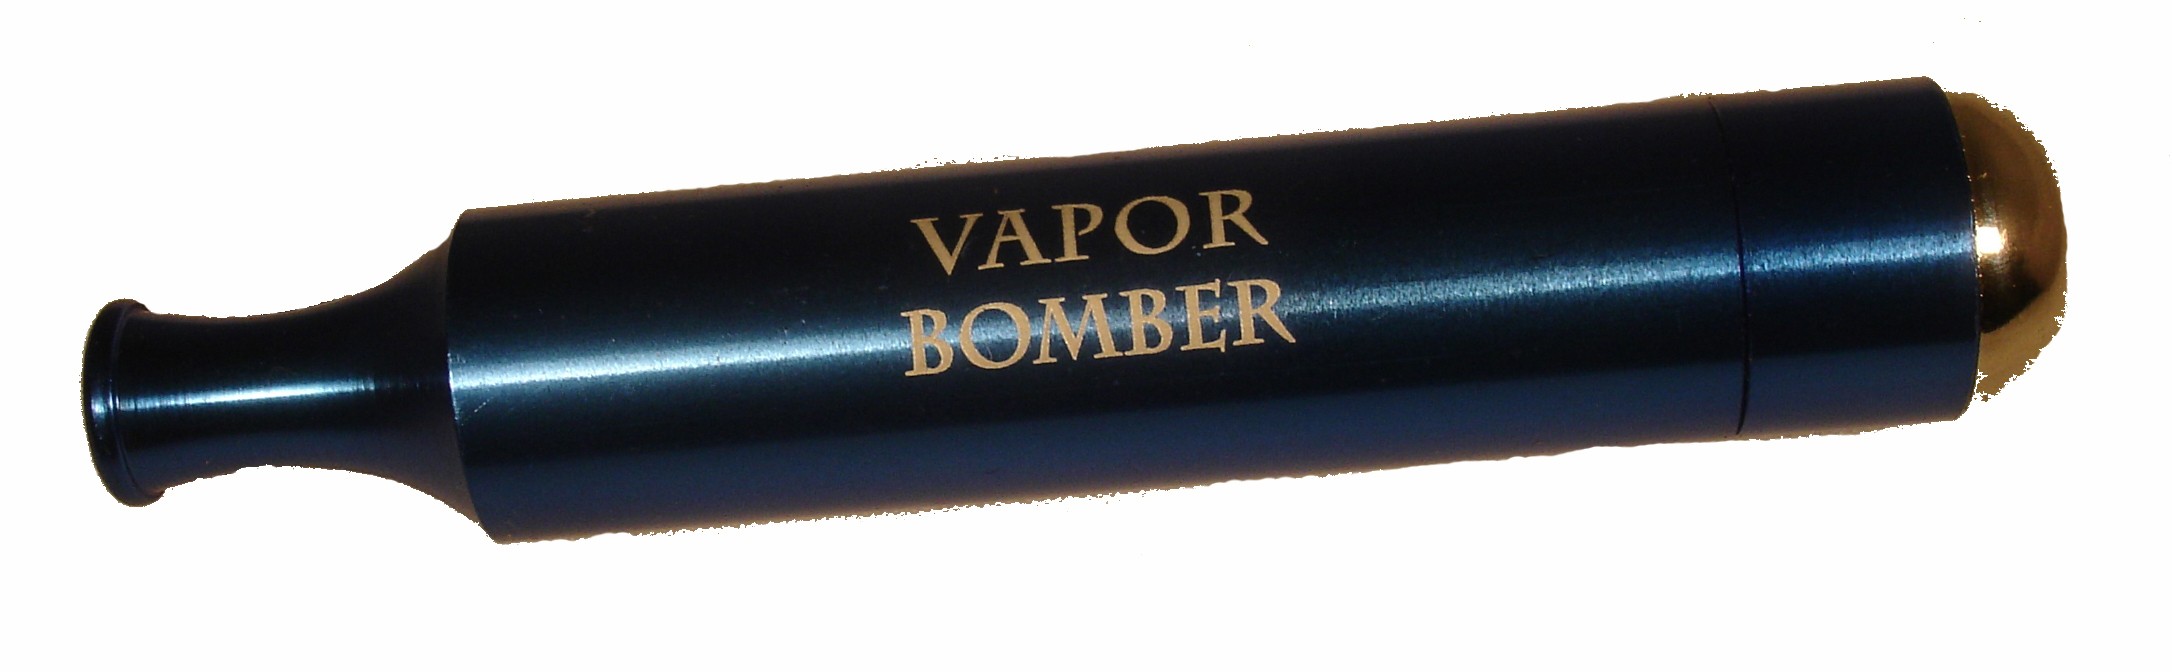 Vapor Bomber